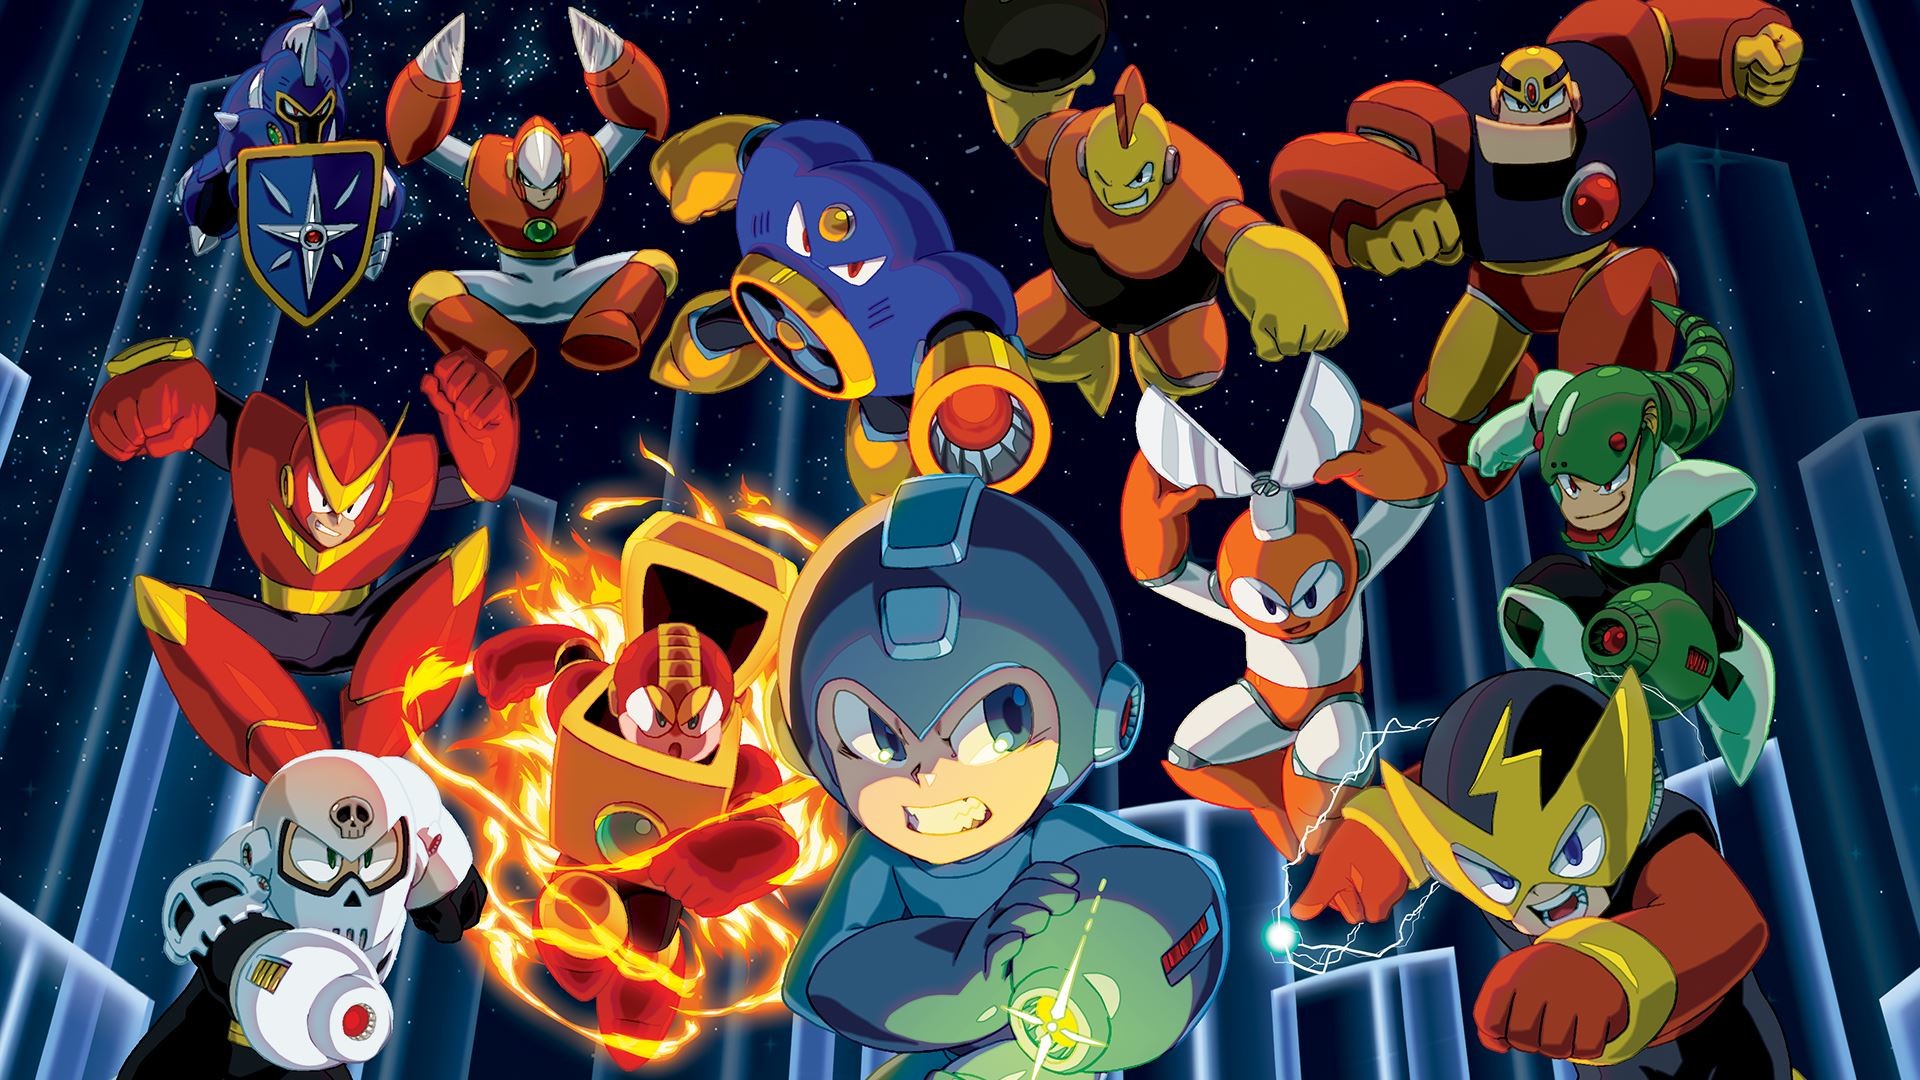 1. Mega Man X Design - wide 7